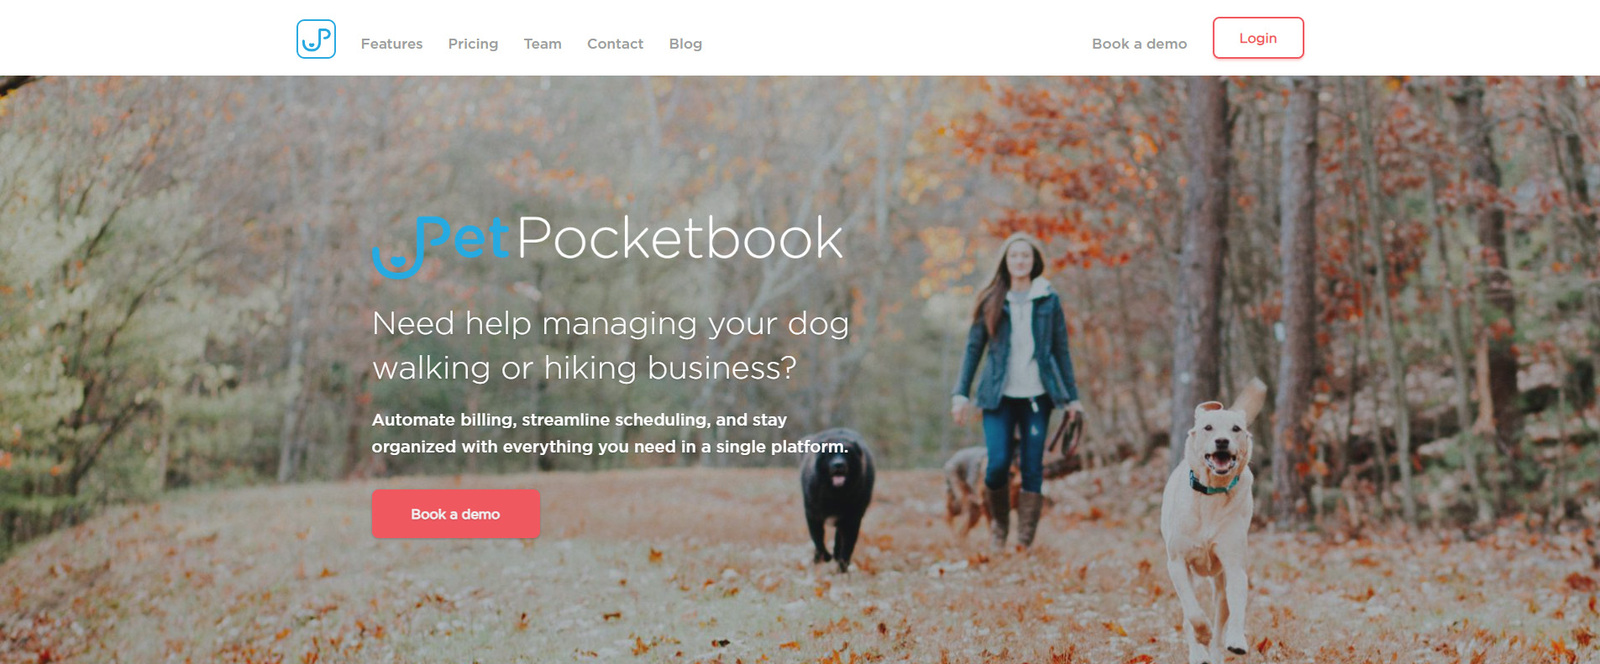 عرض PetPocketbook، أحد أفضل خيارات برامج رعاية الحيوانات الأليفة لمشايات الحيوانات الأليفة.